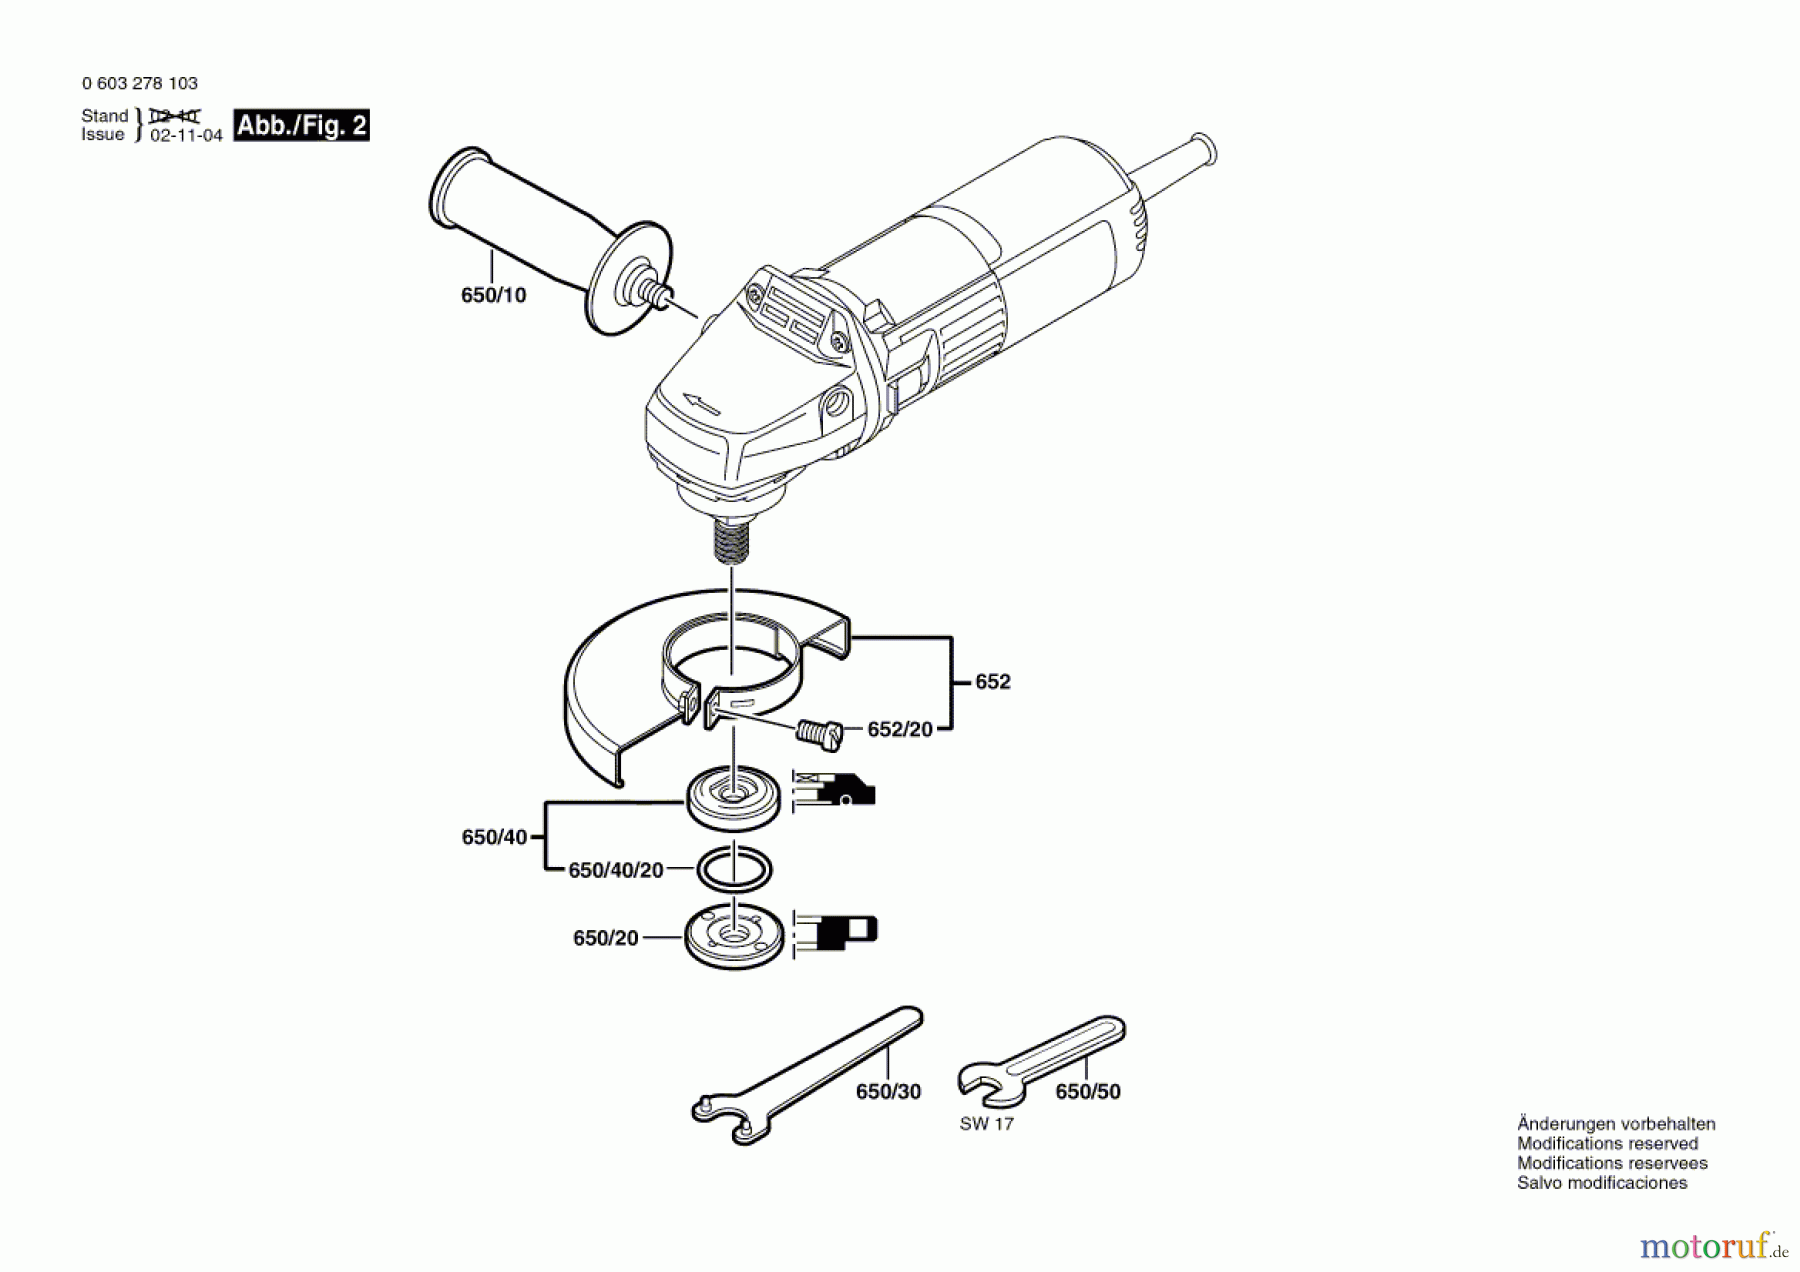  Bosch Werkzeug Winkelschleifer PWS 5-115 Seite 2